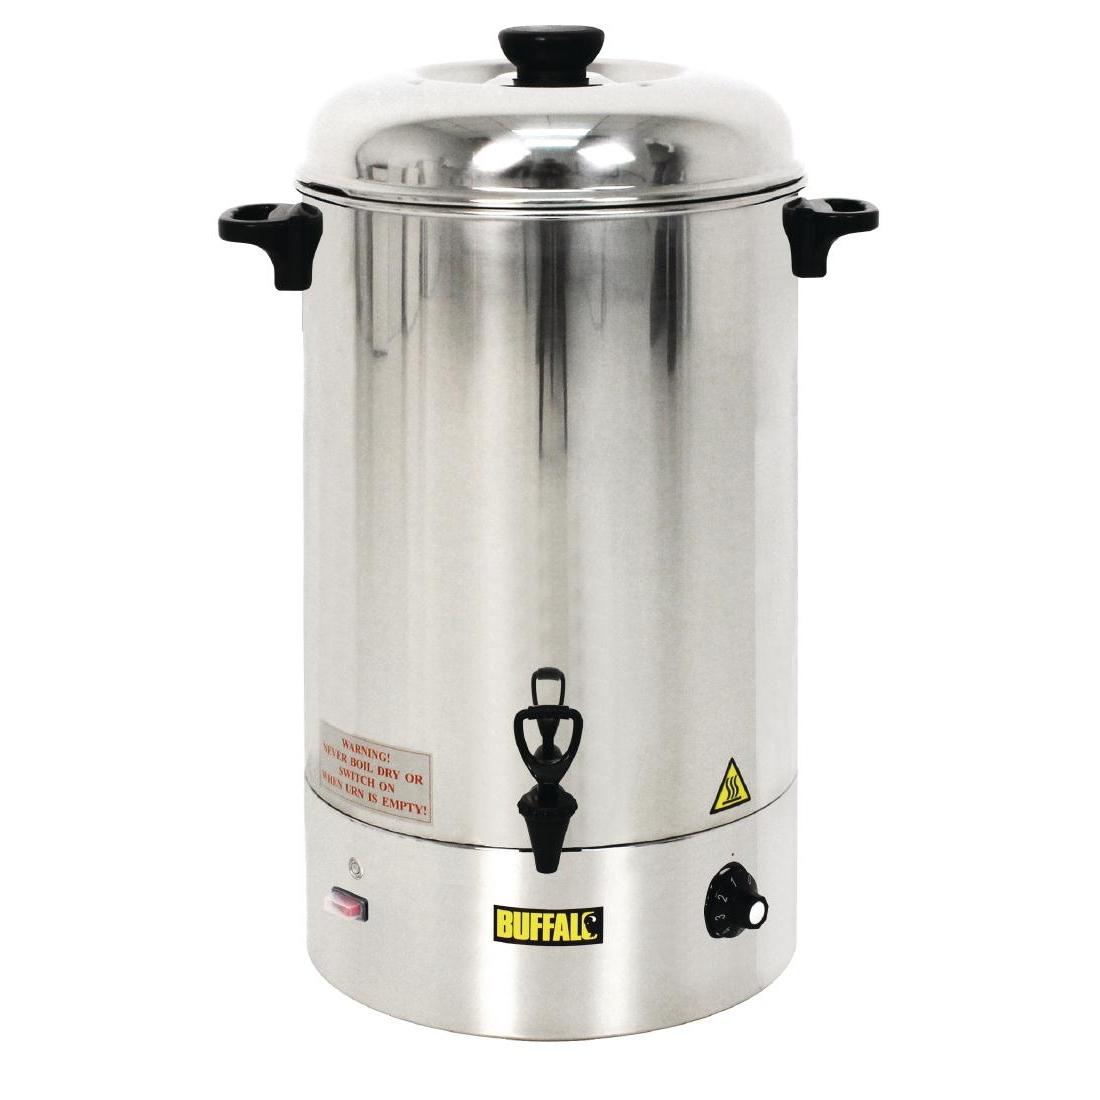 Buffalo Manual Fill Water Boiler 30Ltr - CC192 - 1